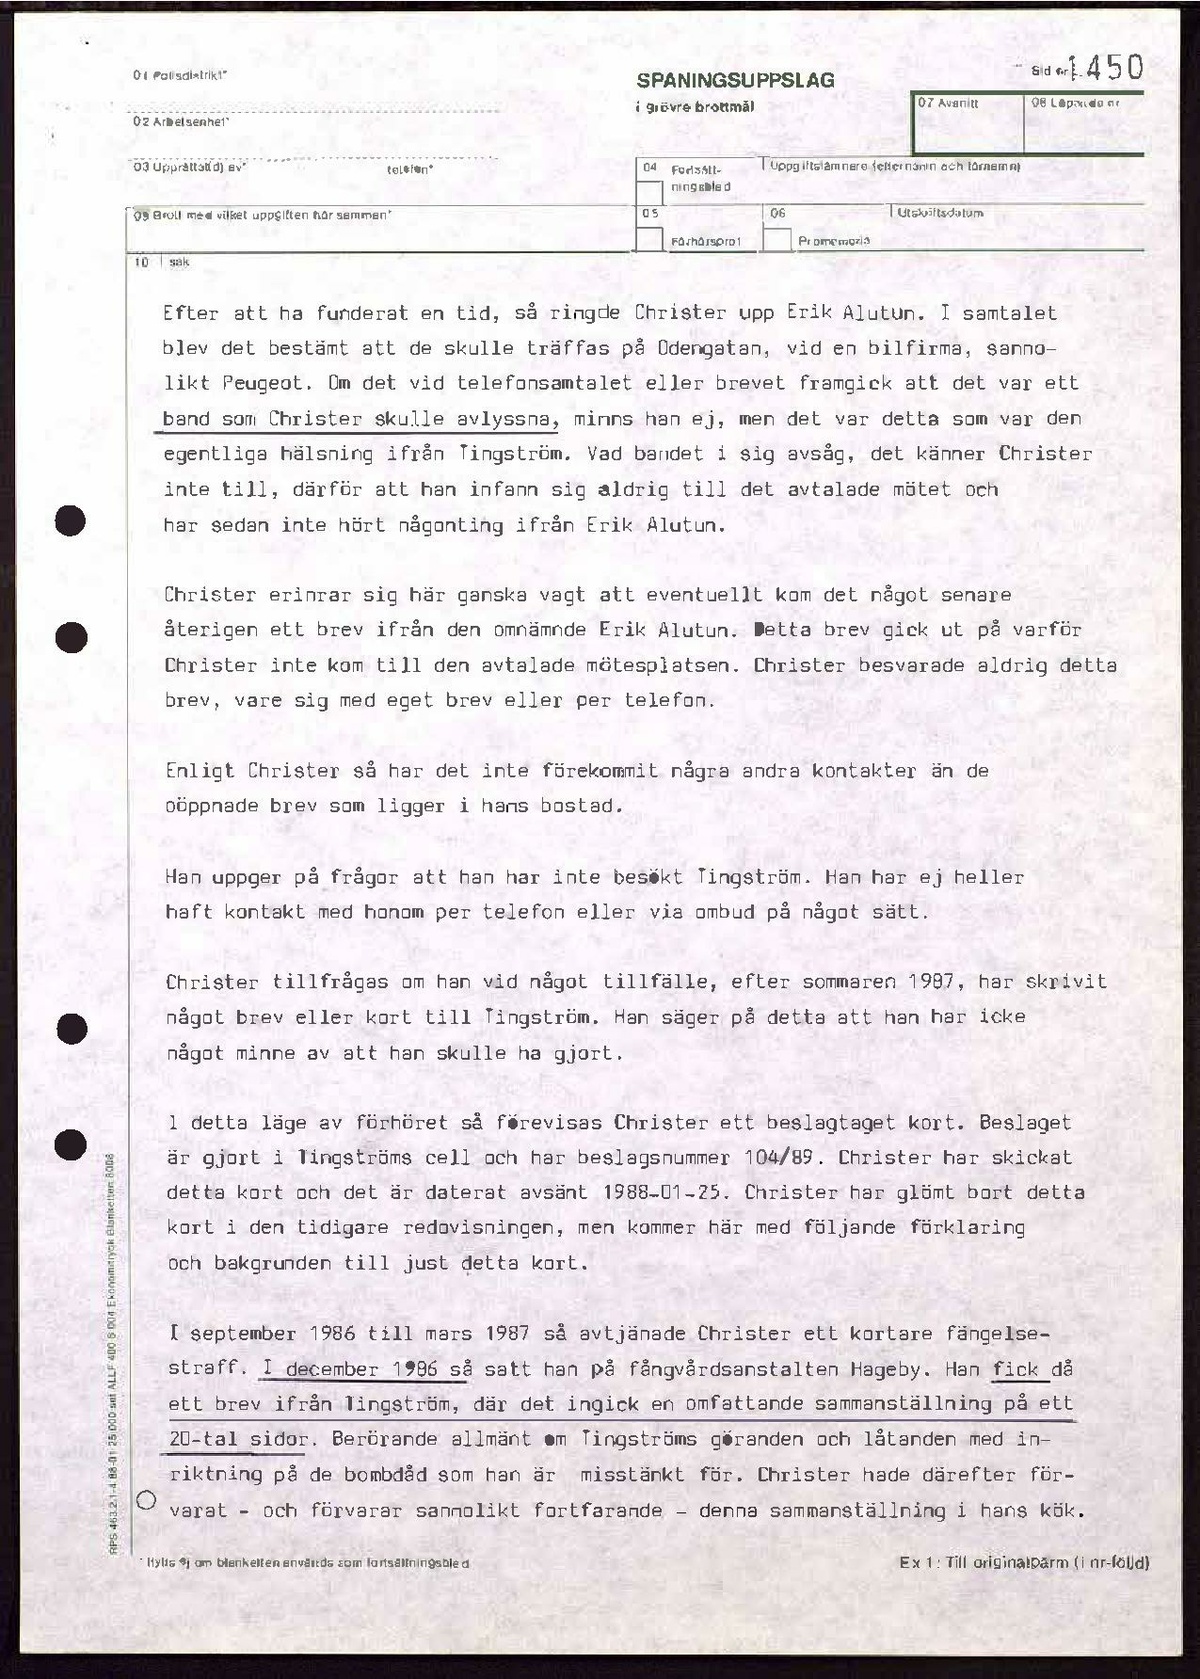 Pol-1989-01-12 KD10405-00-L Christer Pettersson kondoleansboken.pdf